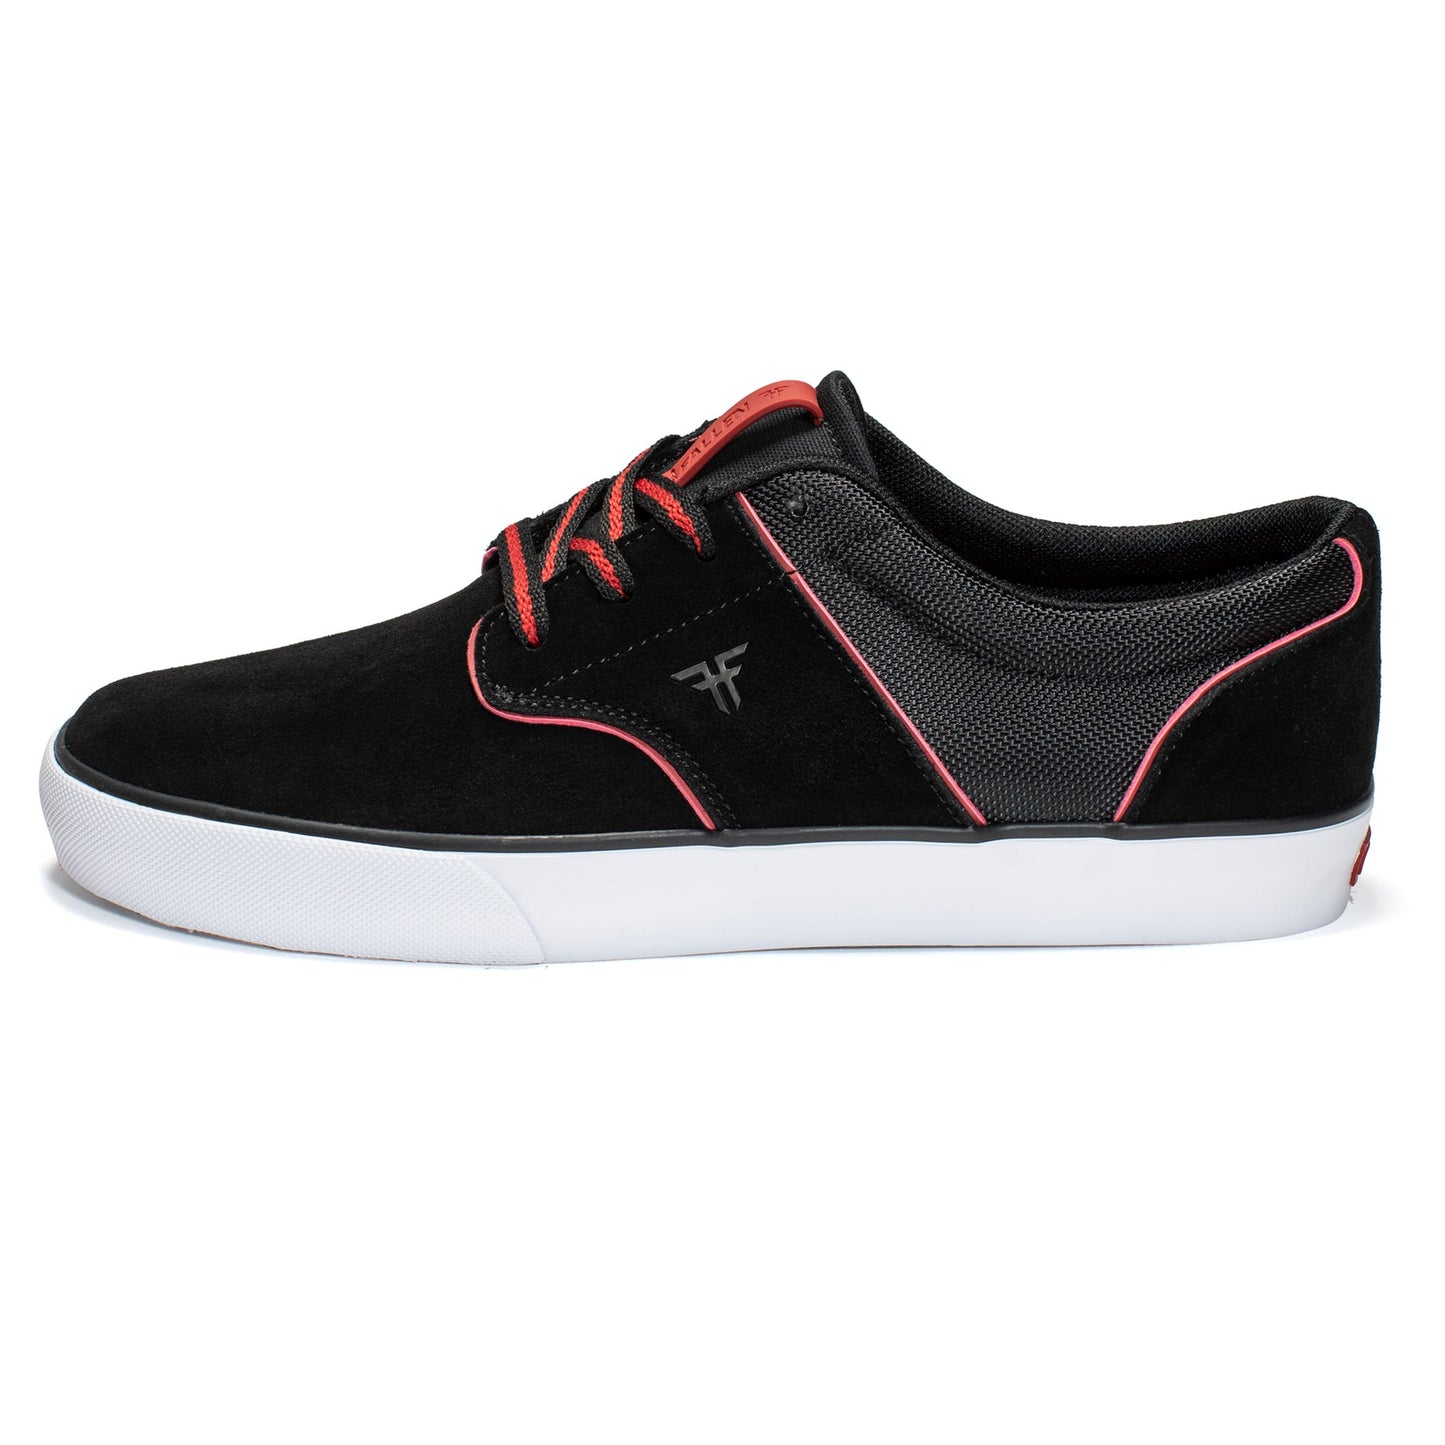 Fallen Footwear Phoenix Black / Red Skate Shoes